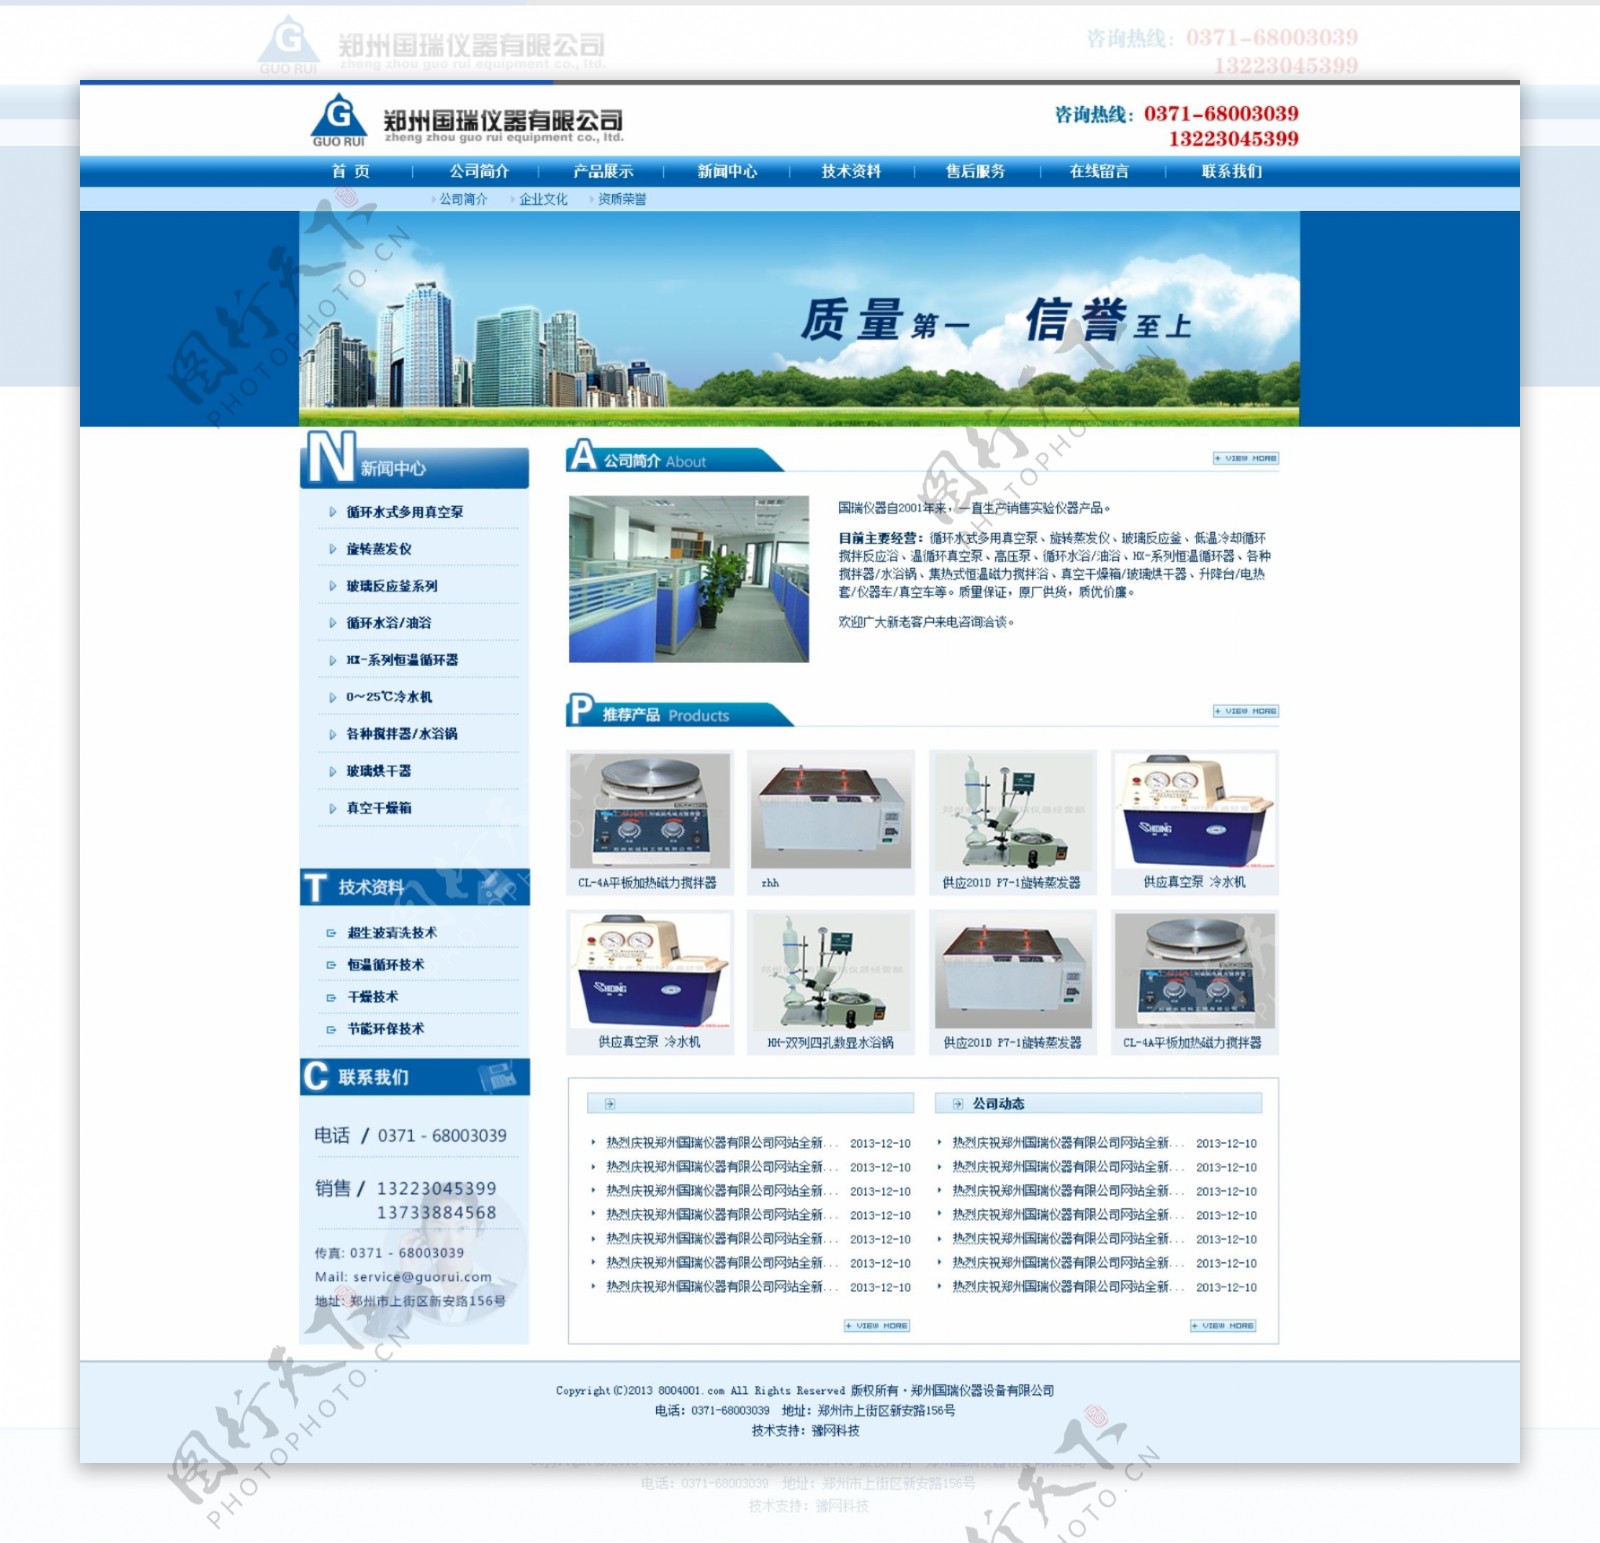 蓝色仪器科技公司网站首页PSD模版